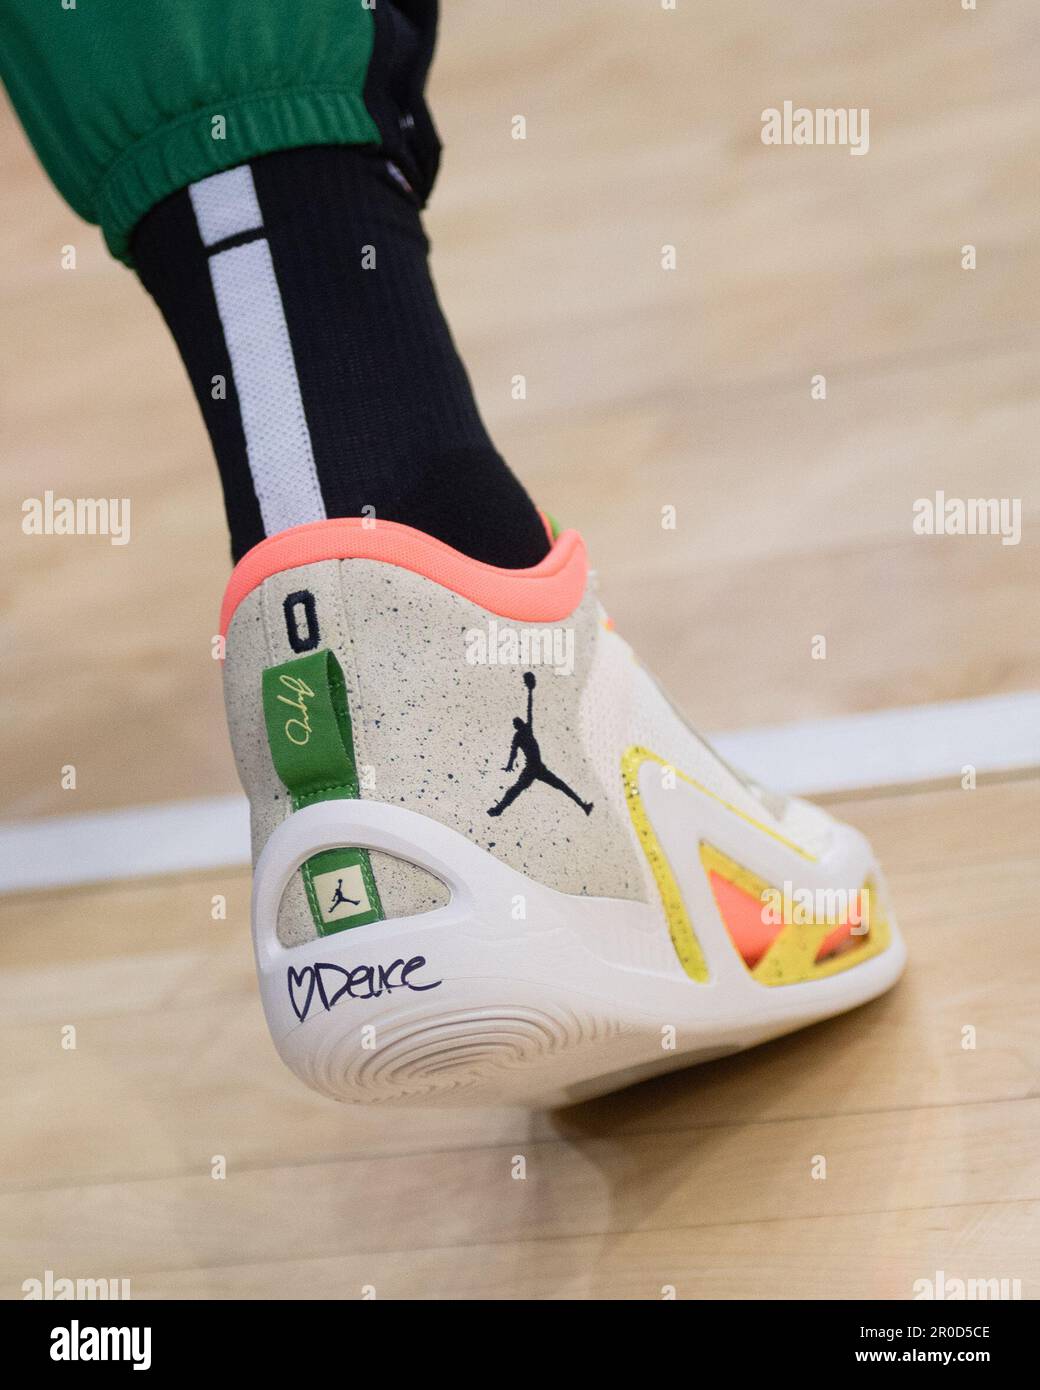 FILADELFIA, PA - MAYO 7: Las zapatillas usadas por Jayson Tatum #0 de los  Celtics de Boston durante el Juego 4 de la Ronda 2 de las Semifinales de la  Conferencia del